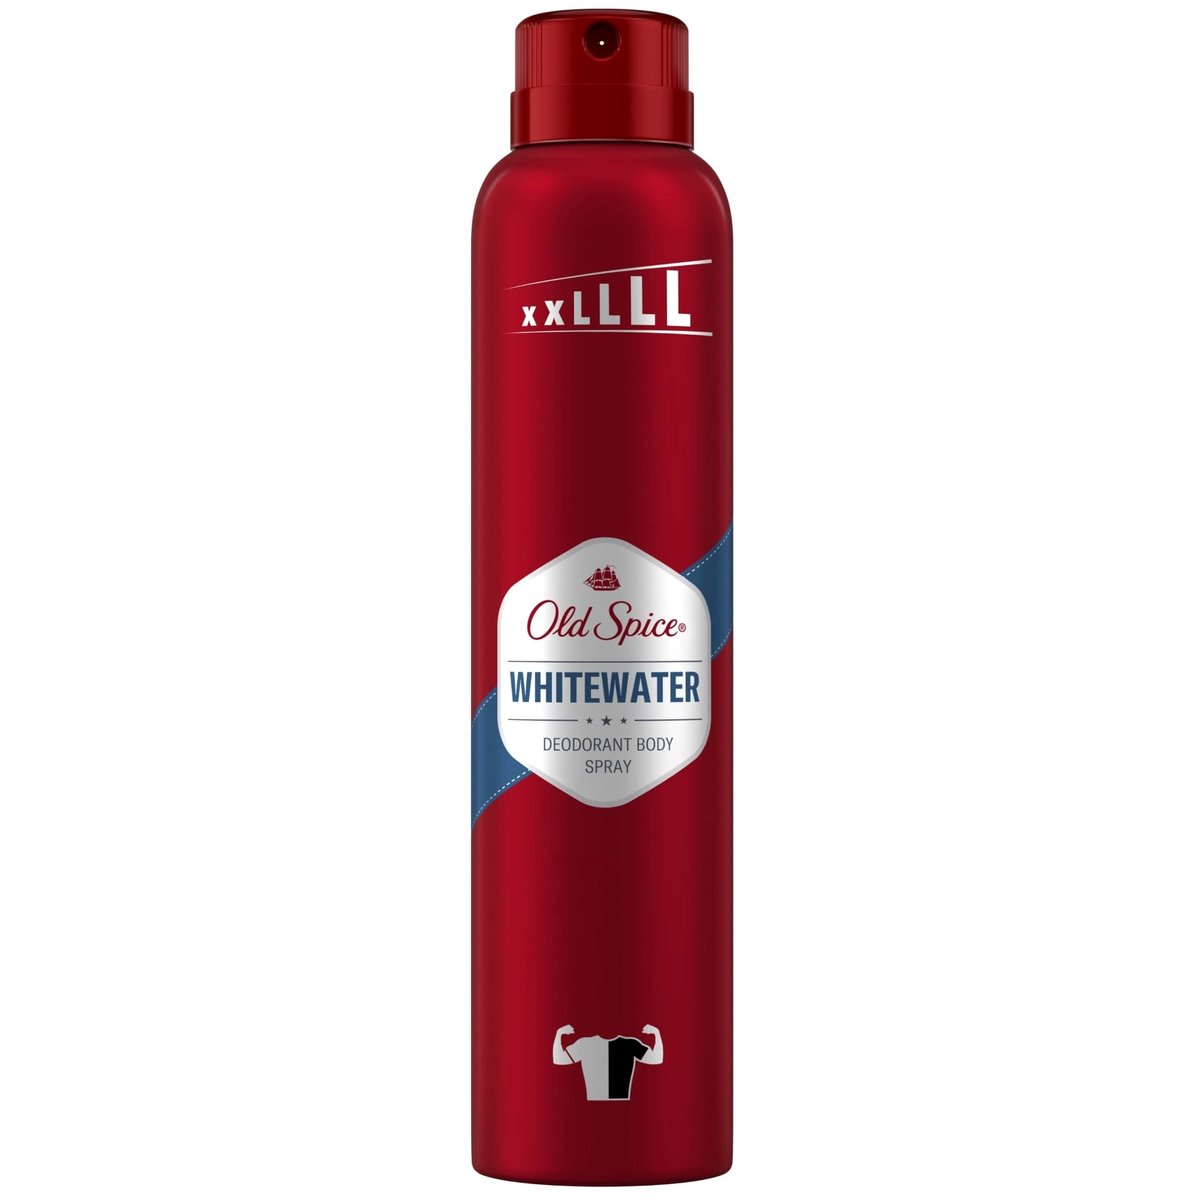 Old Spice Whitewater deodorant se spreji pro muže XXL se svěží vůní